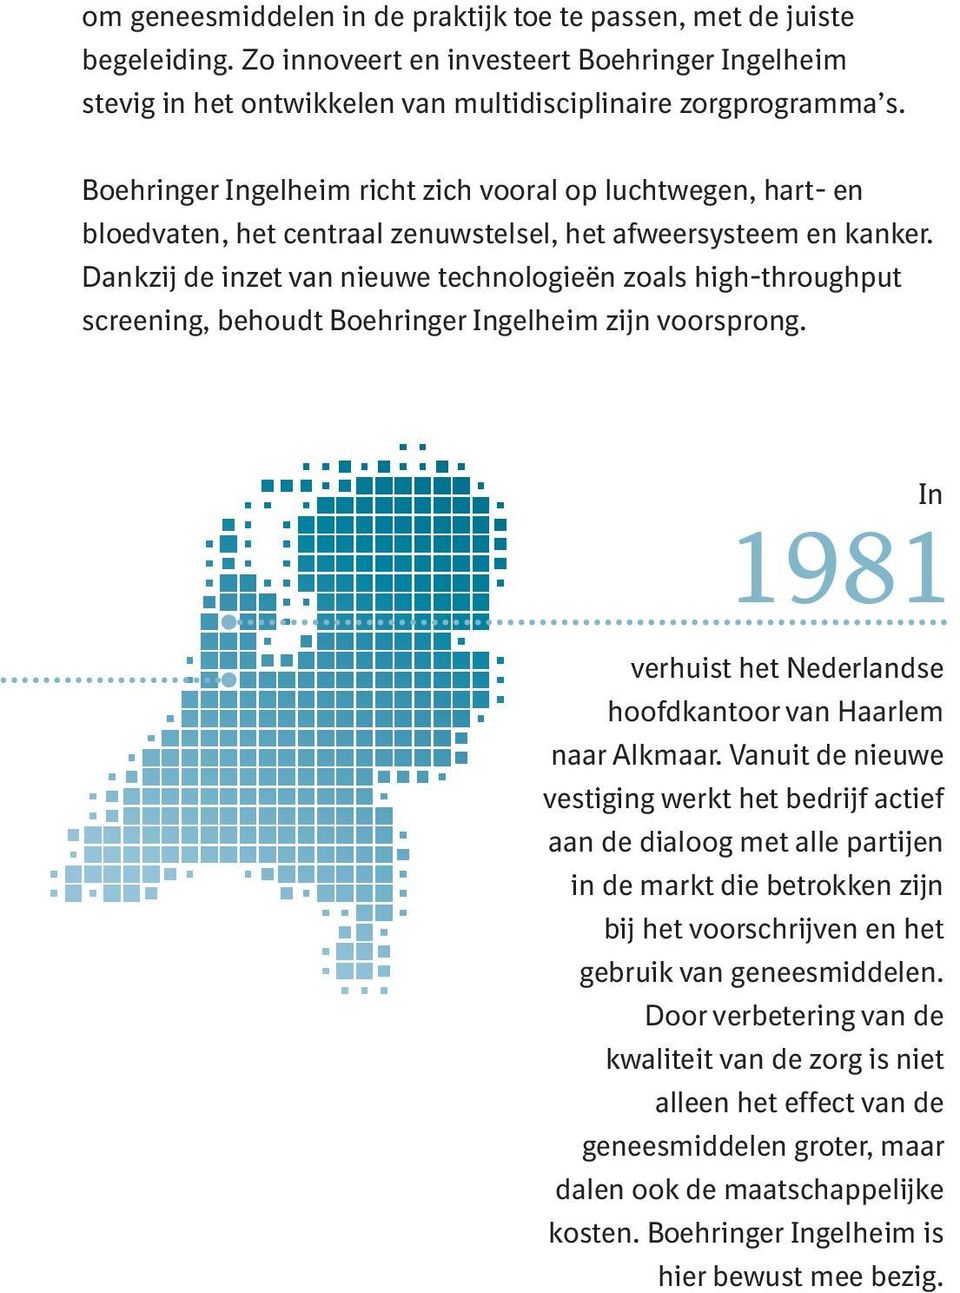 Dankzij de inzet van nieuwe technologieën zoals high-throughput screening, behoudt Boehringer Ingelheim zijn voorsprong. In verhuist het Nederlandse hoofdkantoor van Haarlem naar Alkmaar.